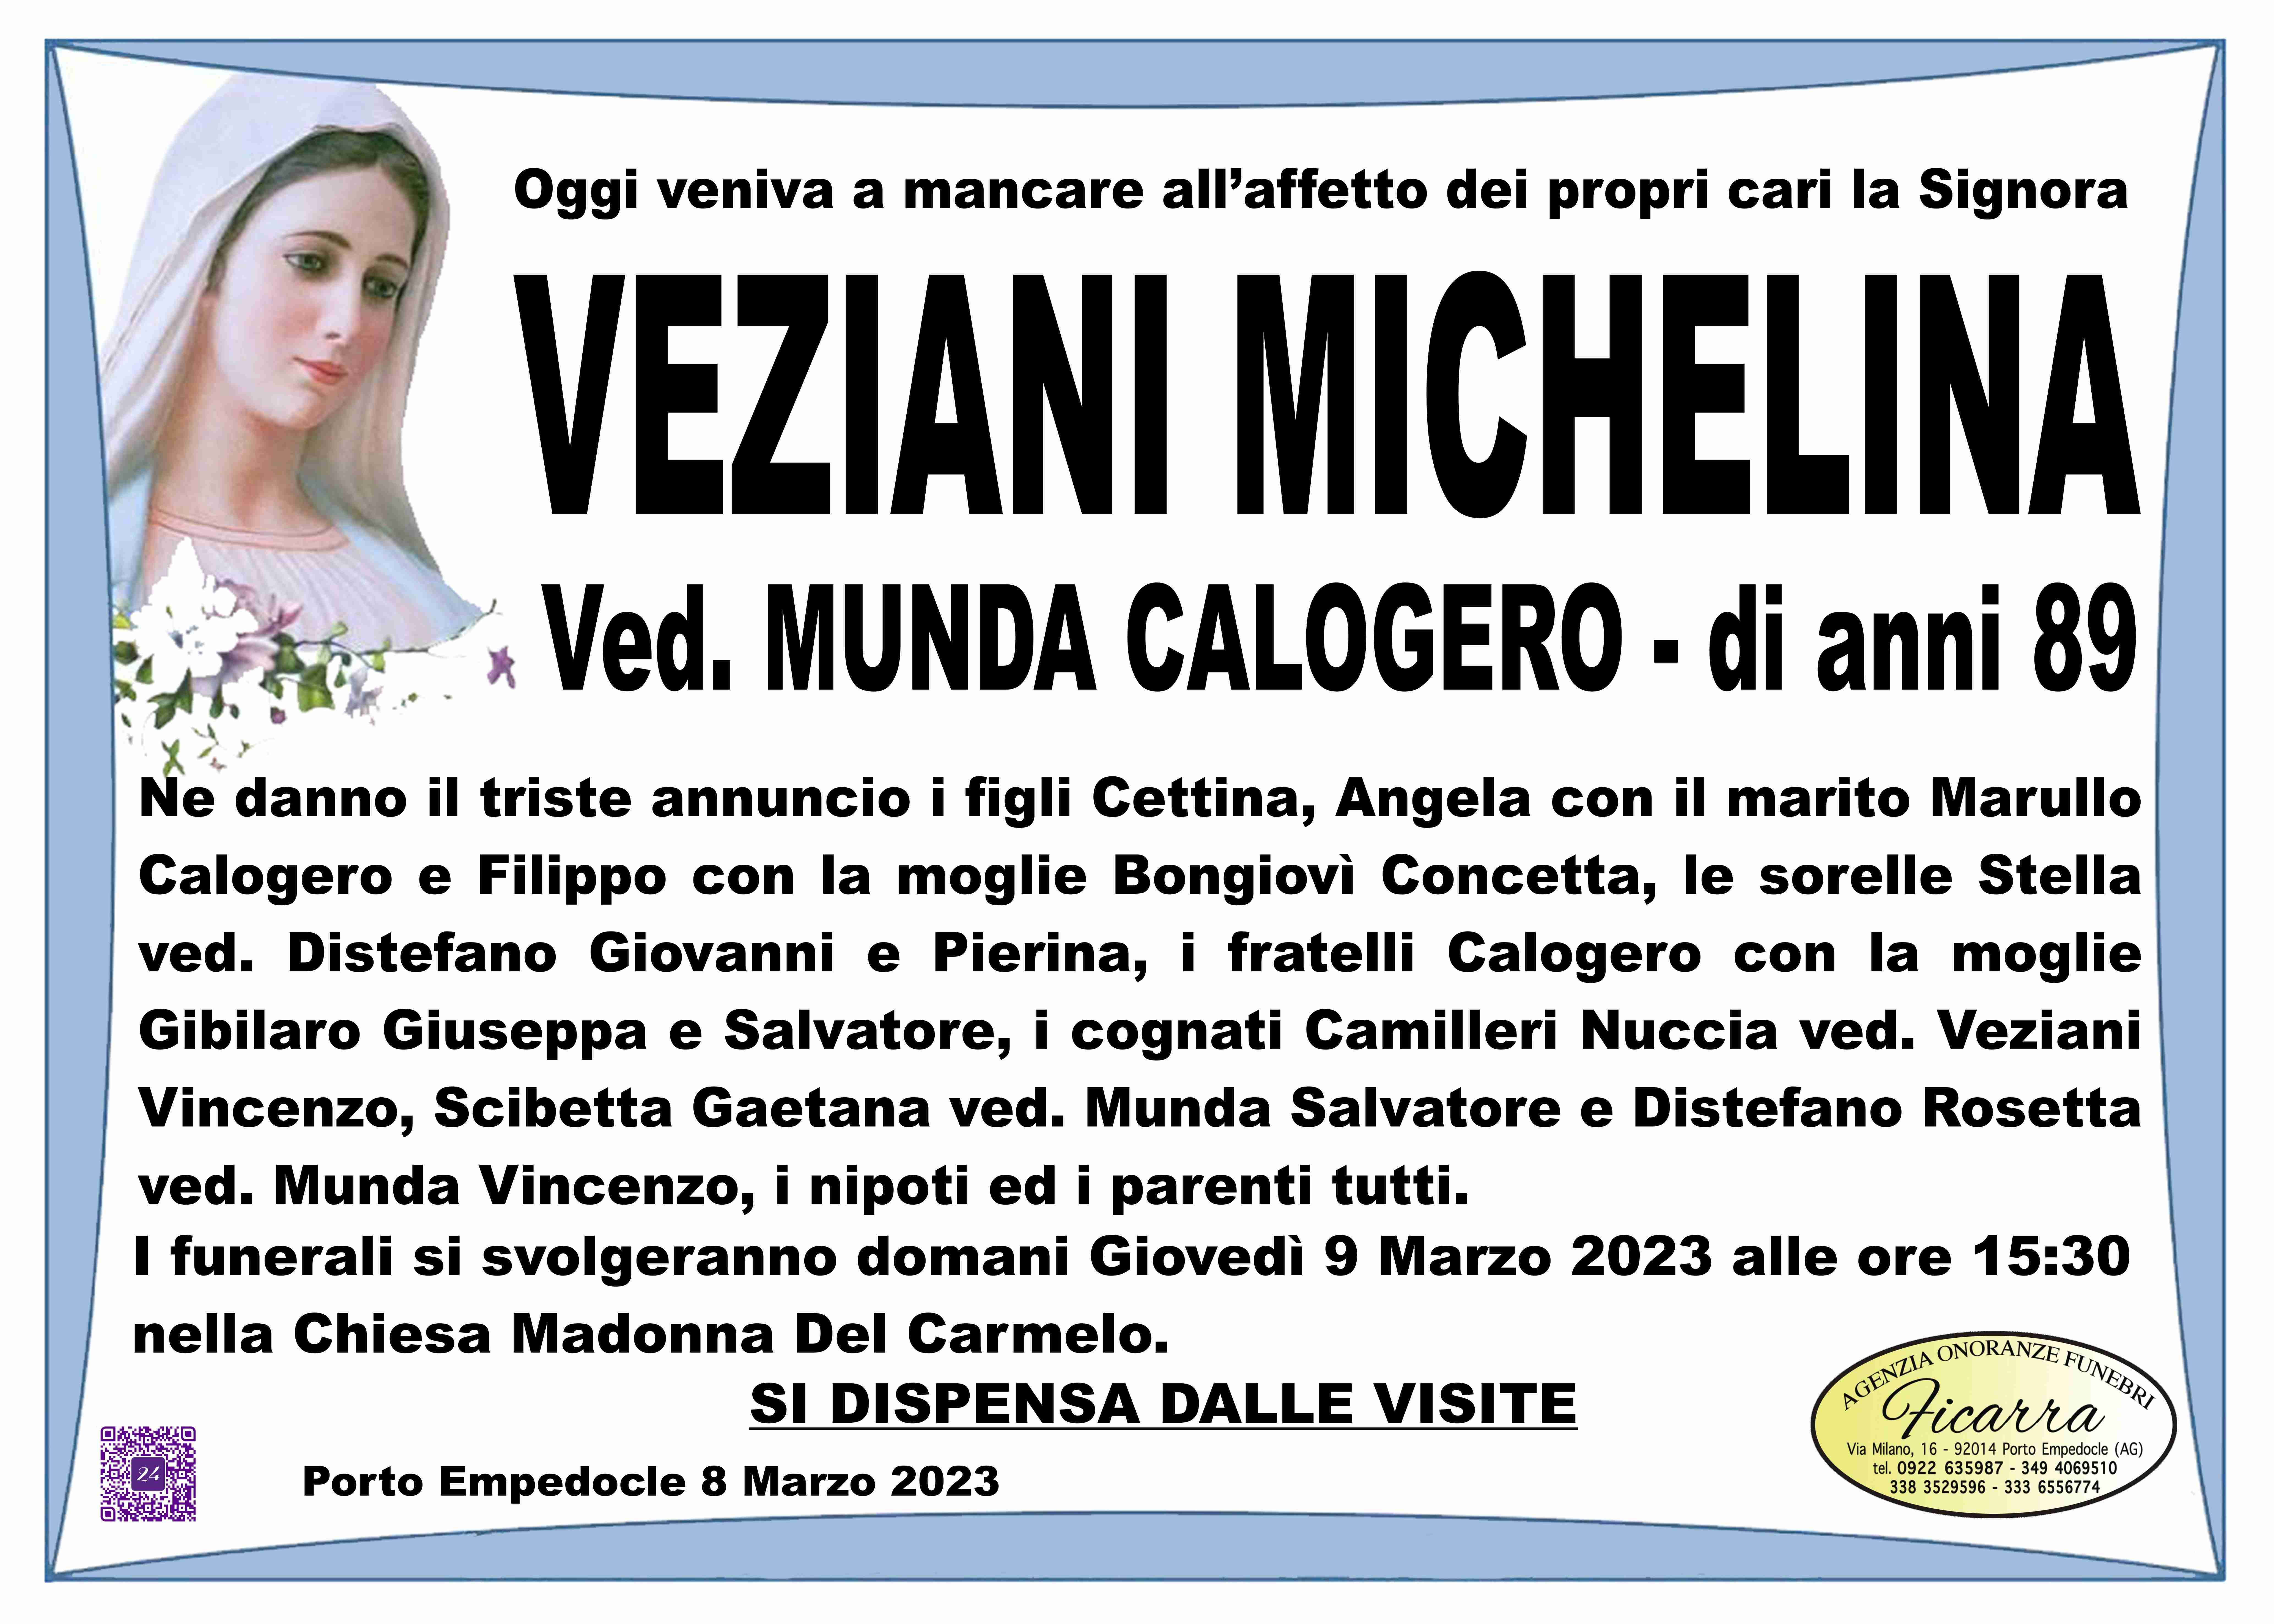 Michelina Veziani